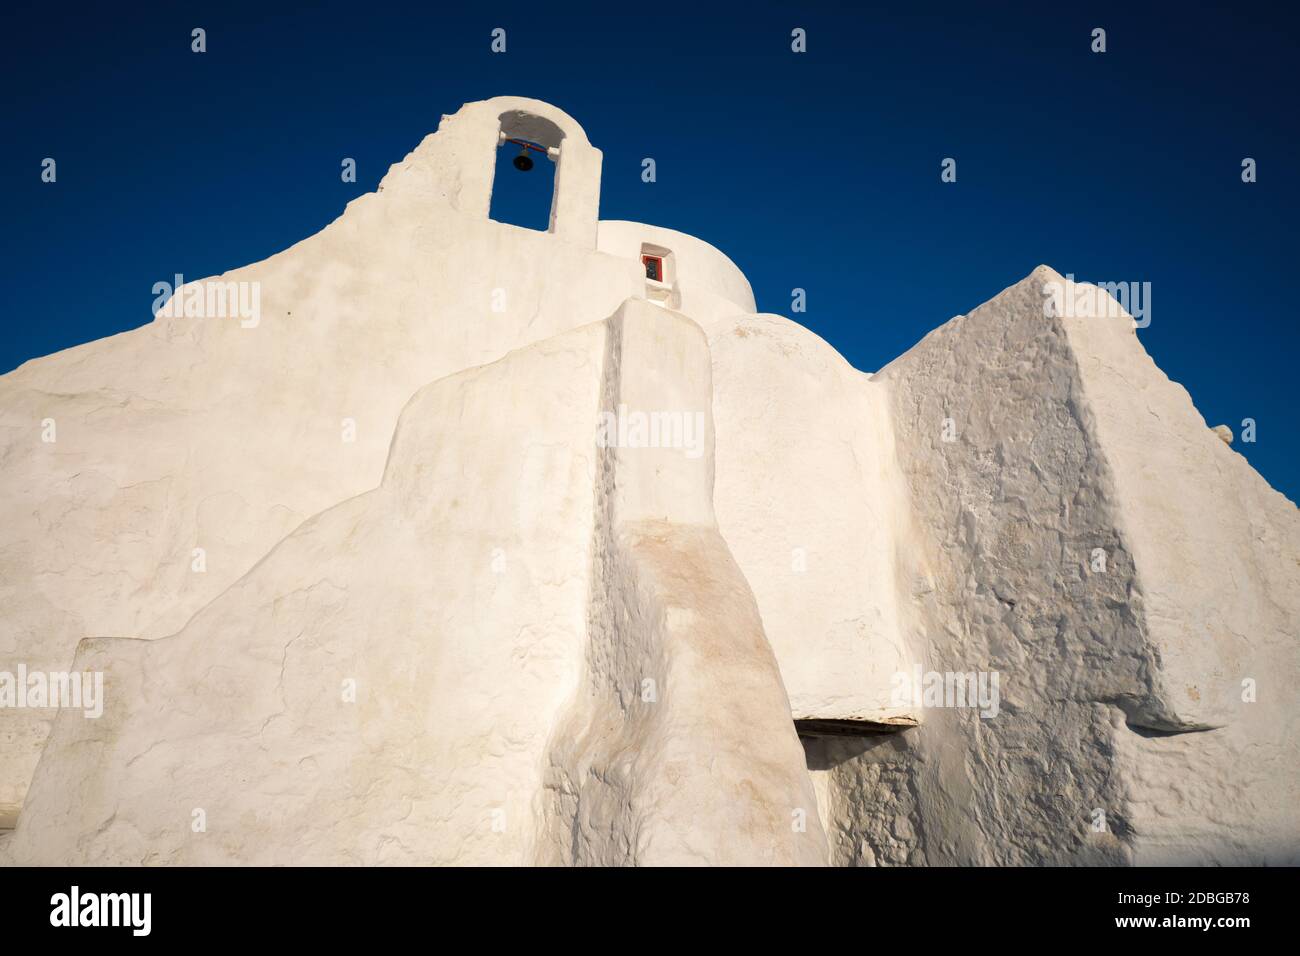 Berühmtes touristisches Wahrzeichen Griechenlands - griechisch-orthodoxe Kirche Panagia Paraportiani in der Stadt Chora auf Mykonos Insel, Griechenland bei Sonnenaufgang Stockfoto